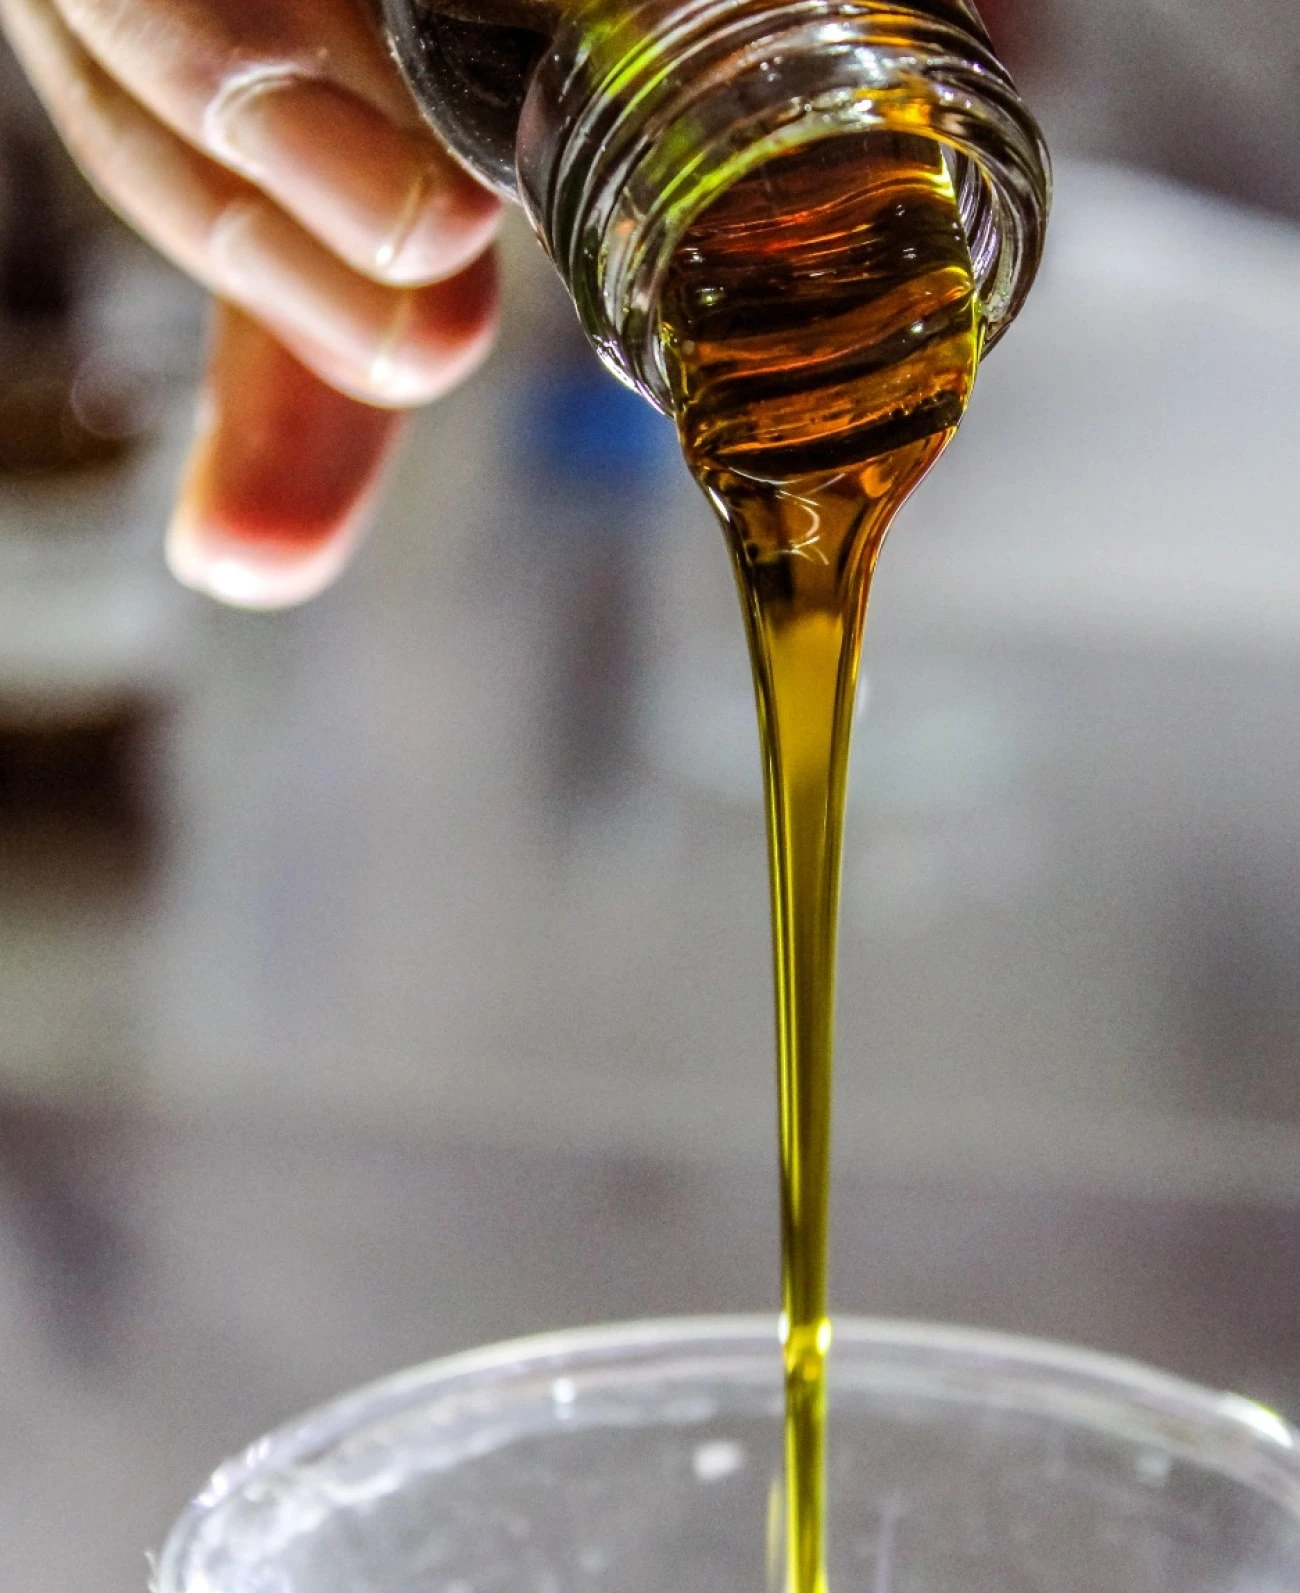 Analisi chimiche olio